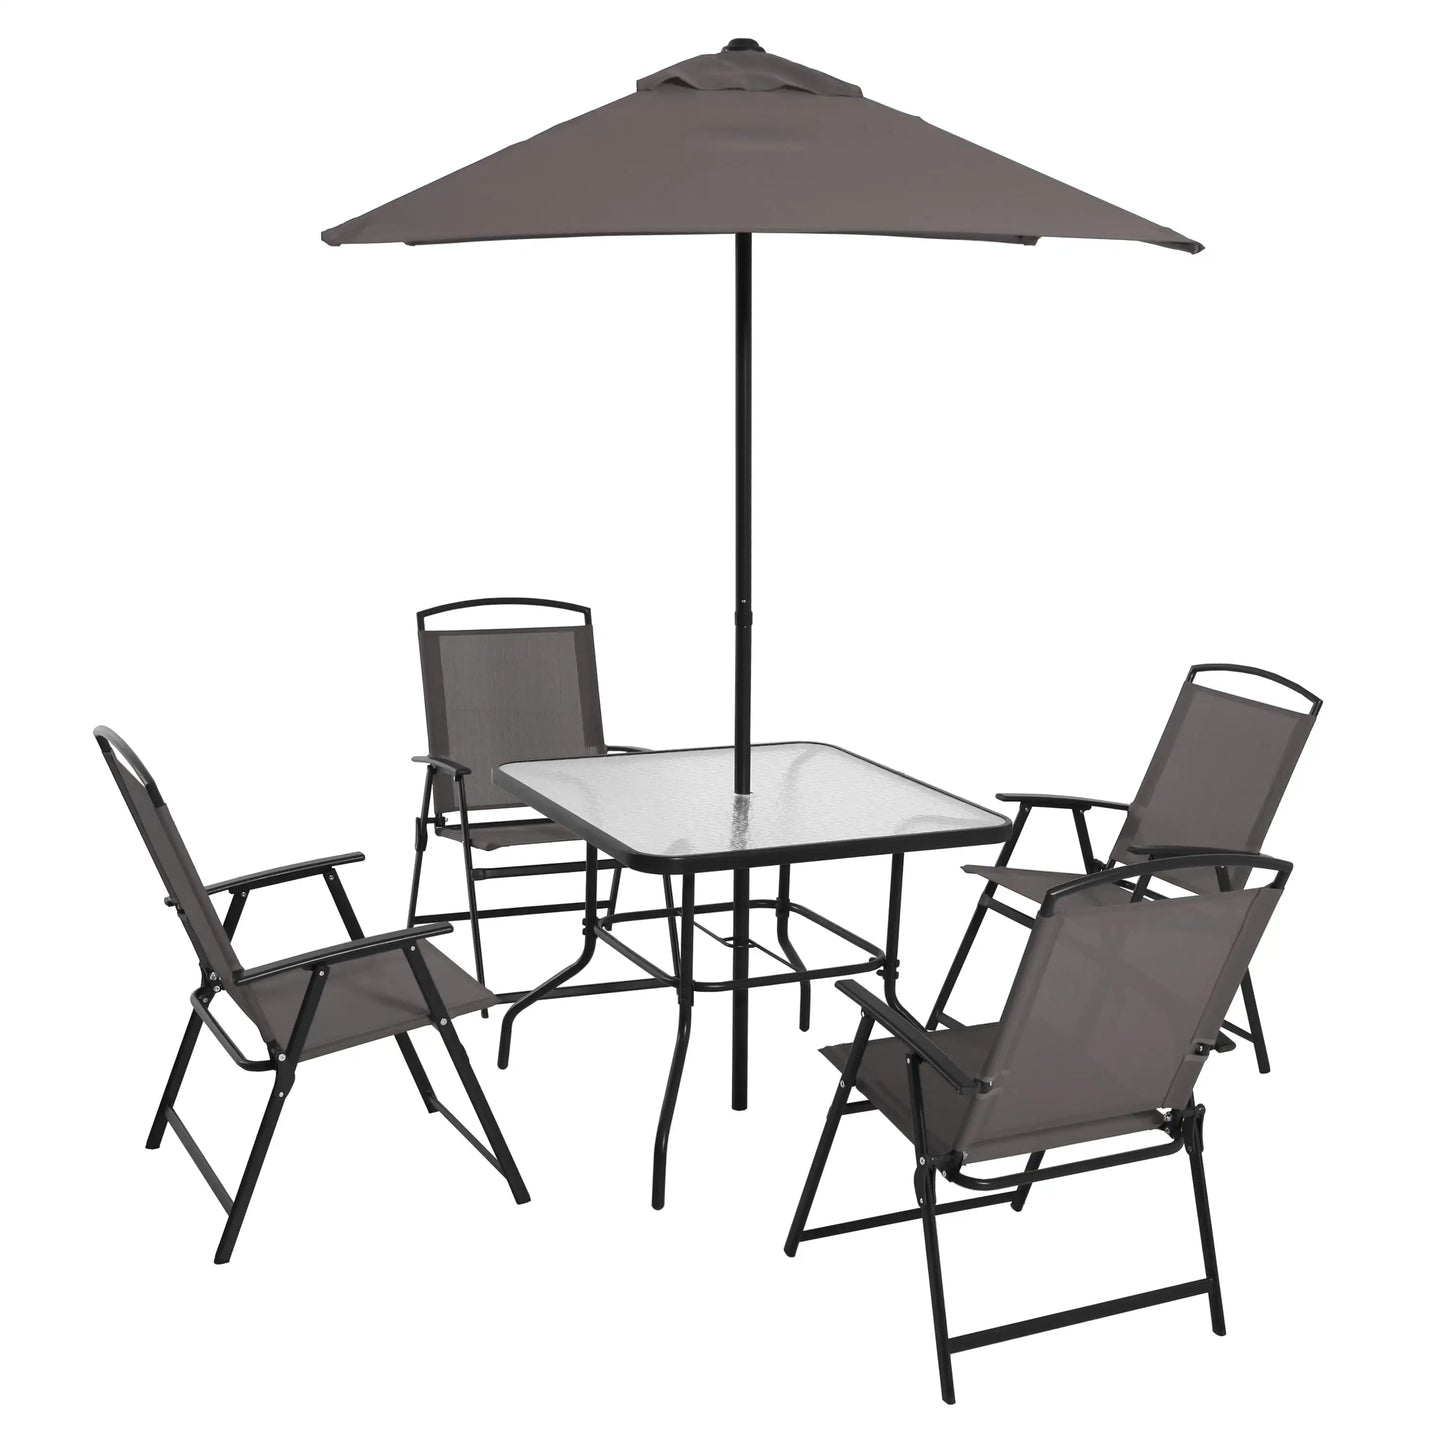 6 Piece Outdoor Patio Dining Set Garden Outdoor Furniture Set Patio Chair Table Umbrella